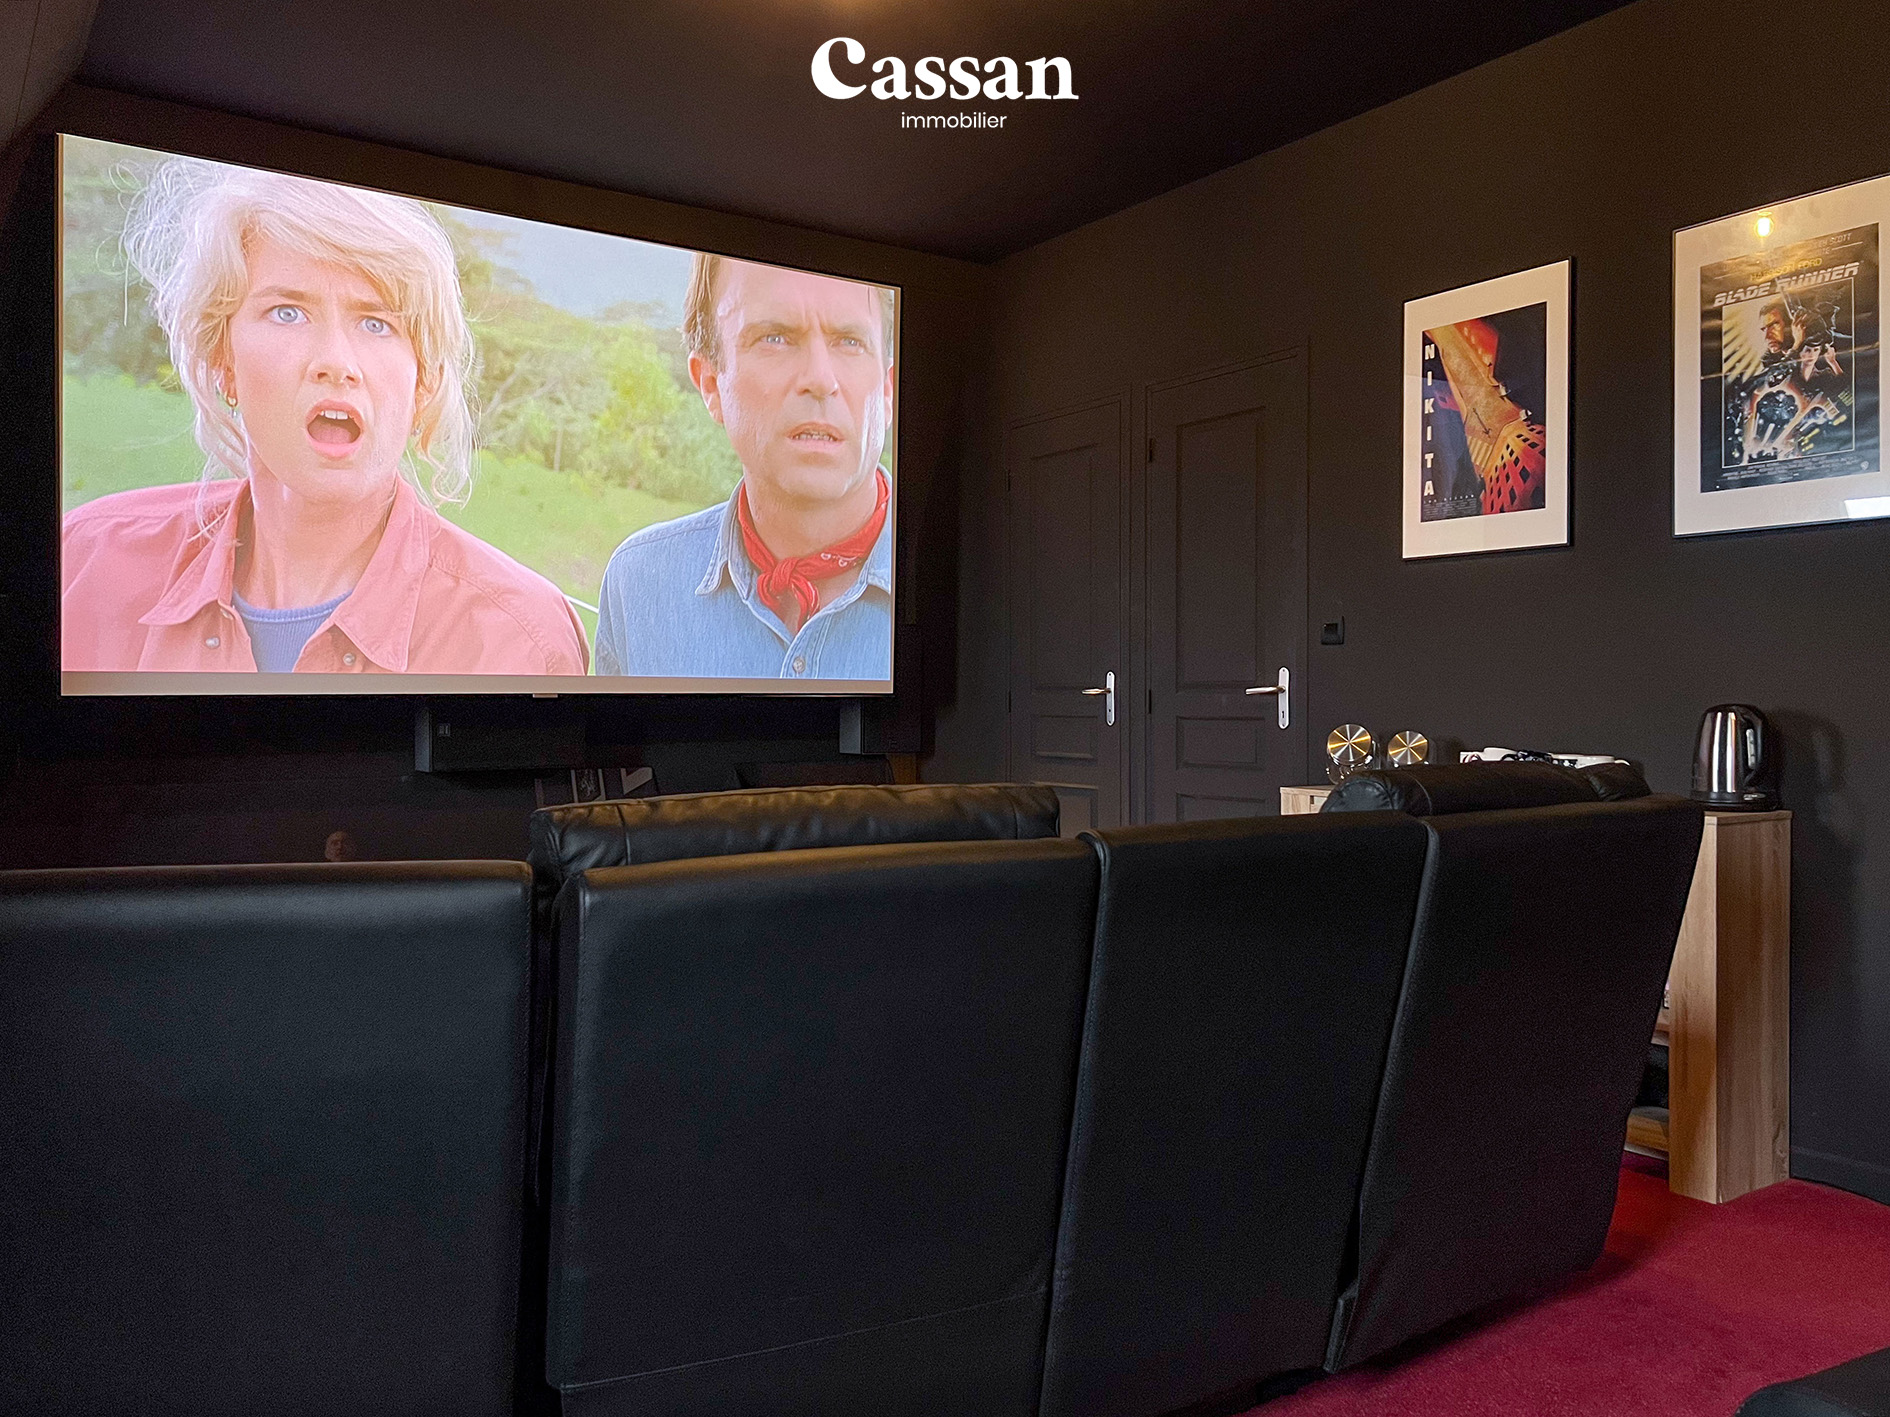 Salle ciné maison à vendre Lacapelle del fraisse Cassan immobilier